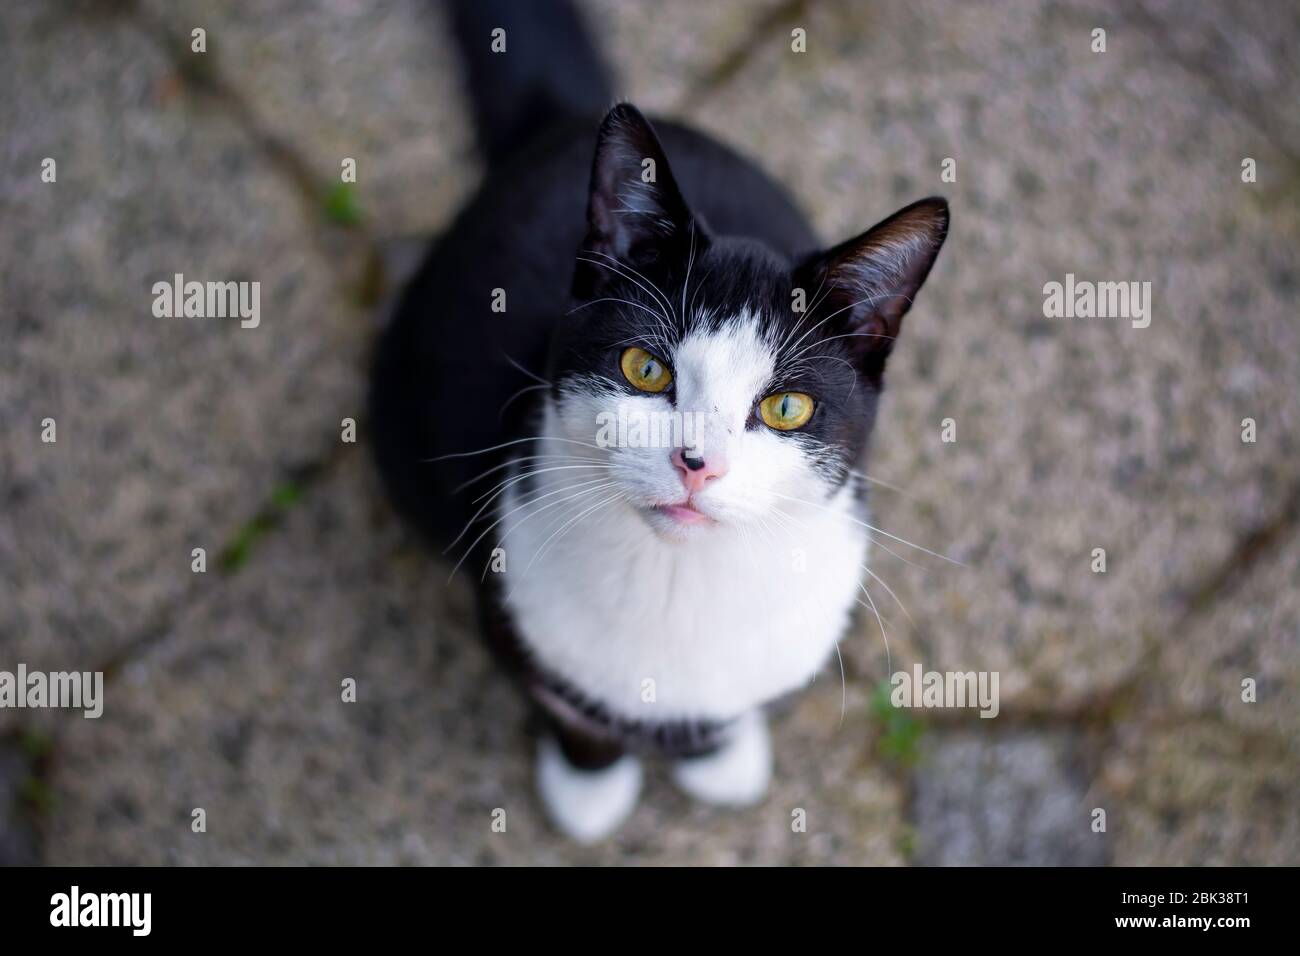 Gatto bianco e nero con occhi gialli seduti al di fuori del terreno e guardando verso l'alto guardando la fotocamera Foto Stock